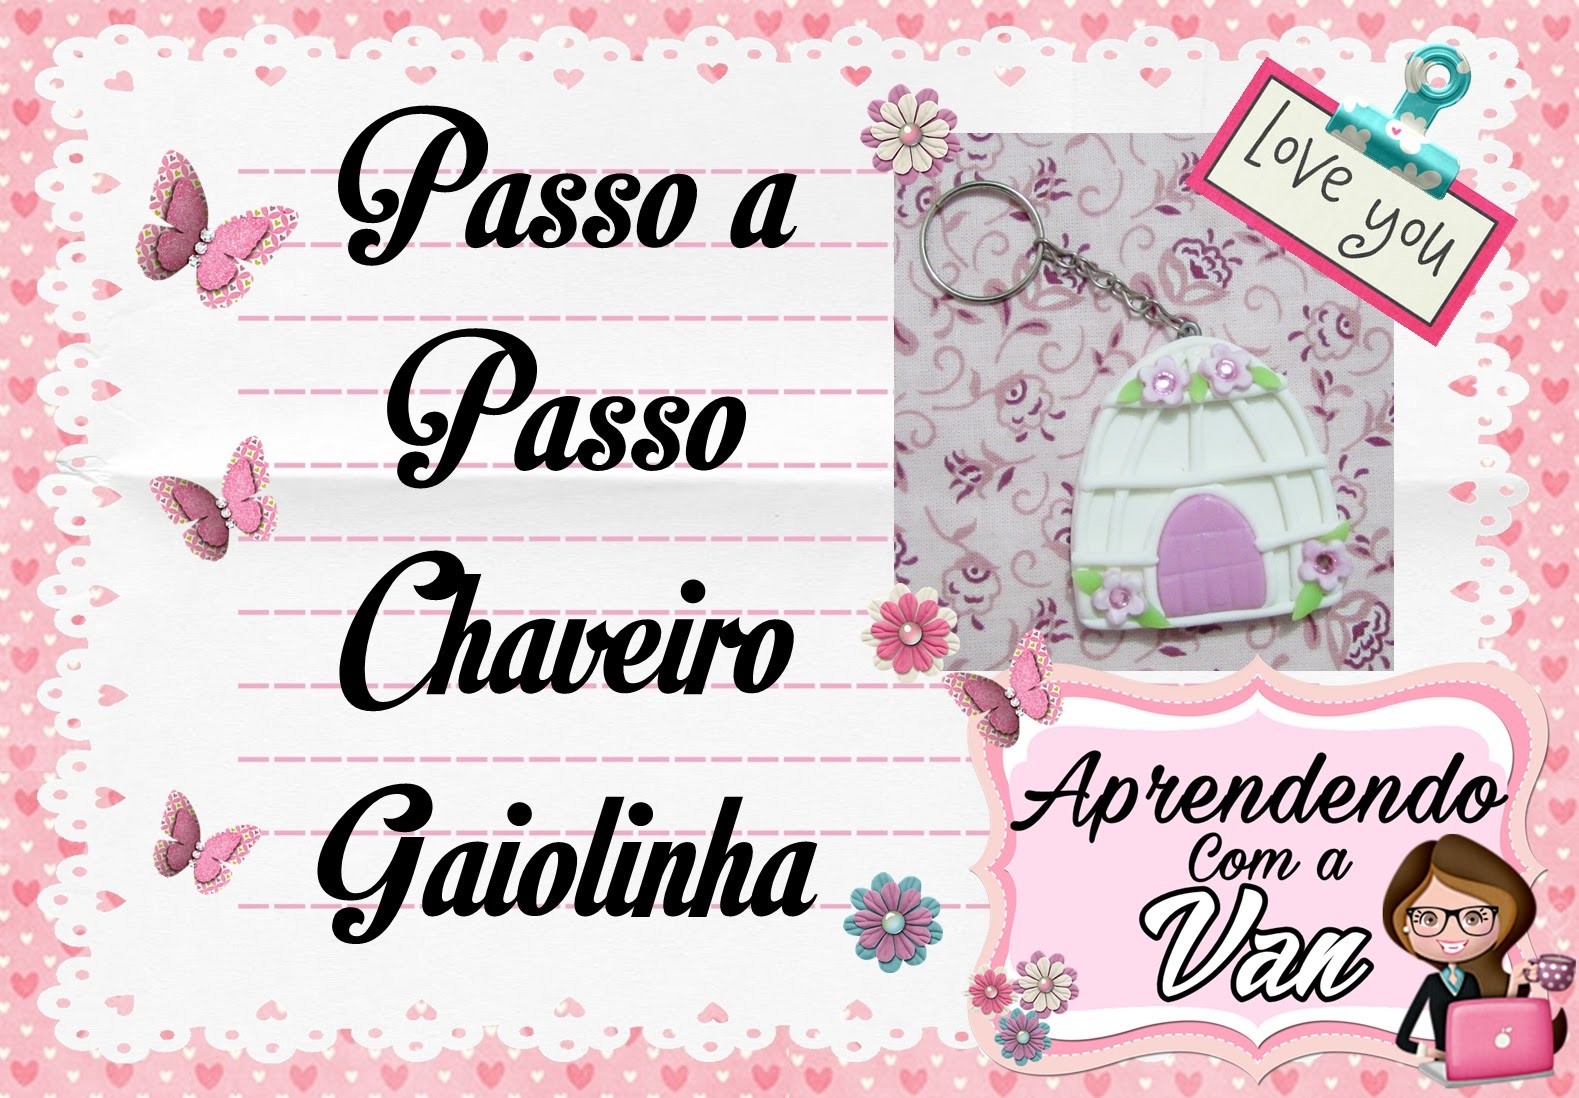 (DIY) PASSO A PASSO CHAVEIRO GAIOLINHA - Especial Dia das Mães #13